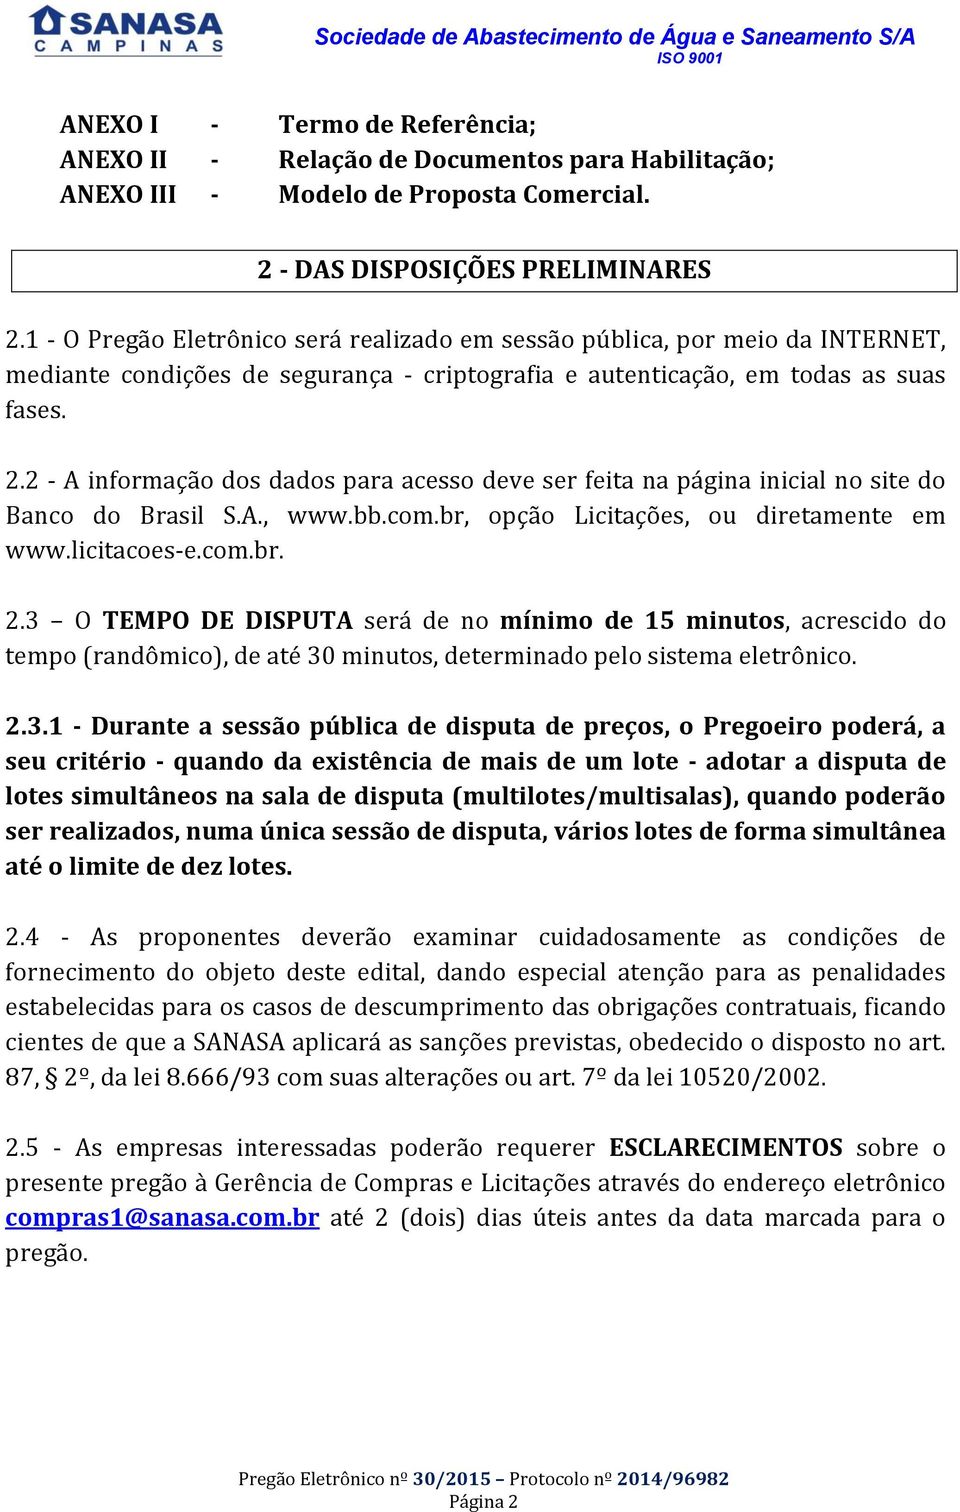 2 - A informação dos dados para acesso deve ser feita na página inicial no site do Banco do Brasil S.A., www.bb.com.br, opção Licitações, ou diretamente em www.licitacoes-e.com.br. 2.